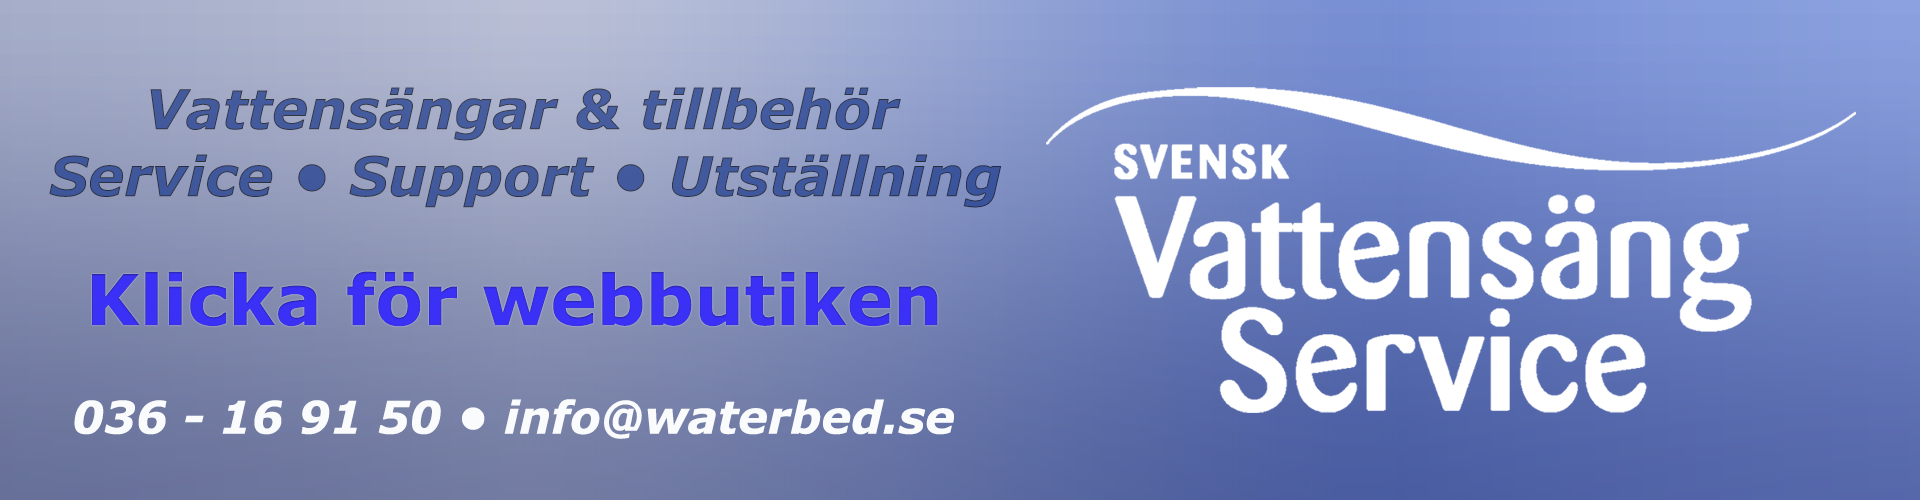 Välkommen till Svensk Vattensängsevice